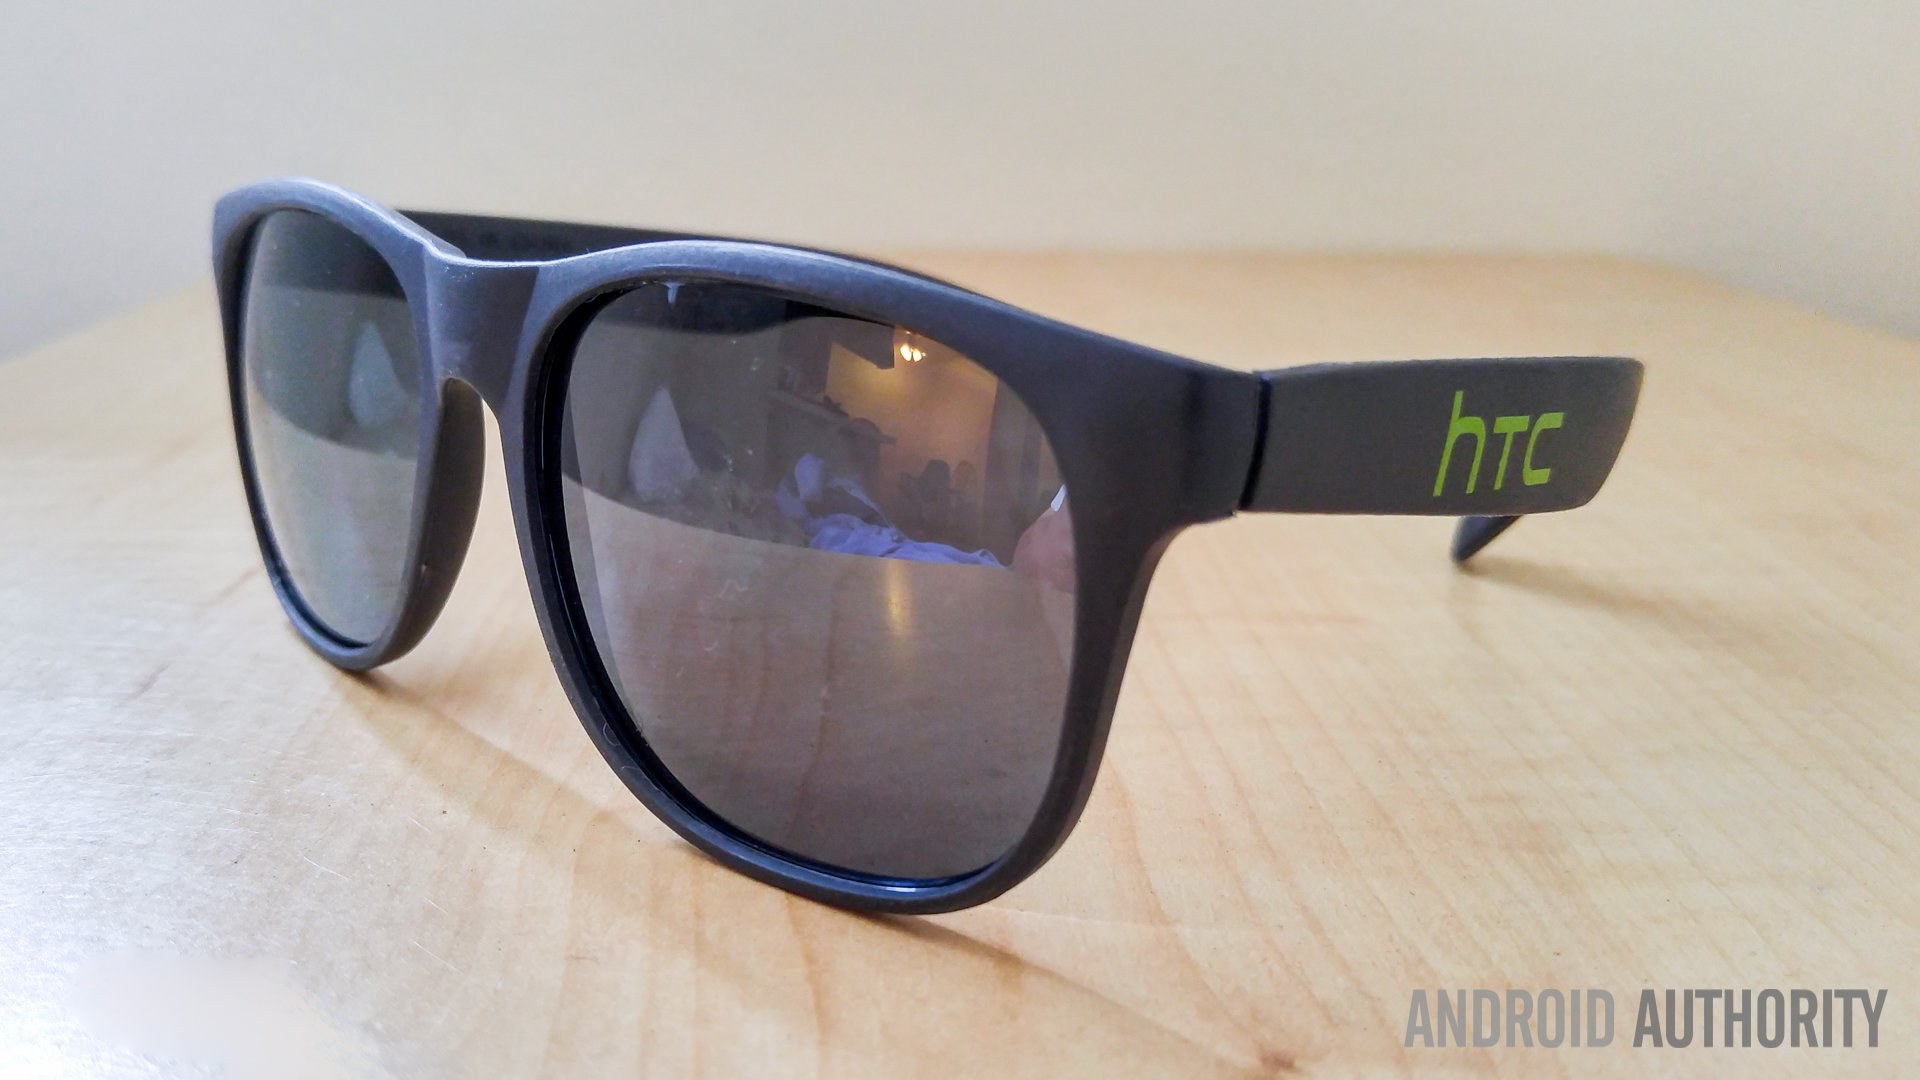 HTC-glasses-1